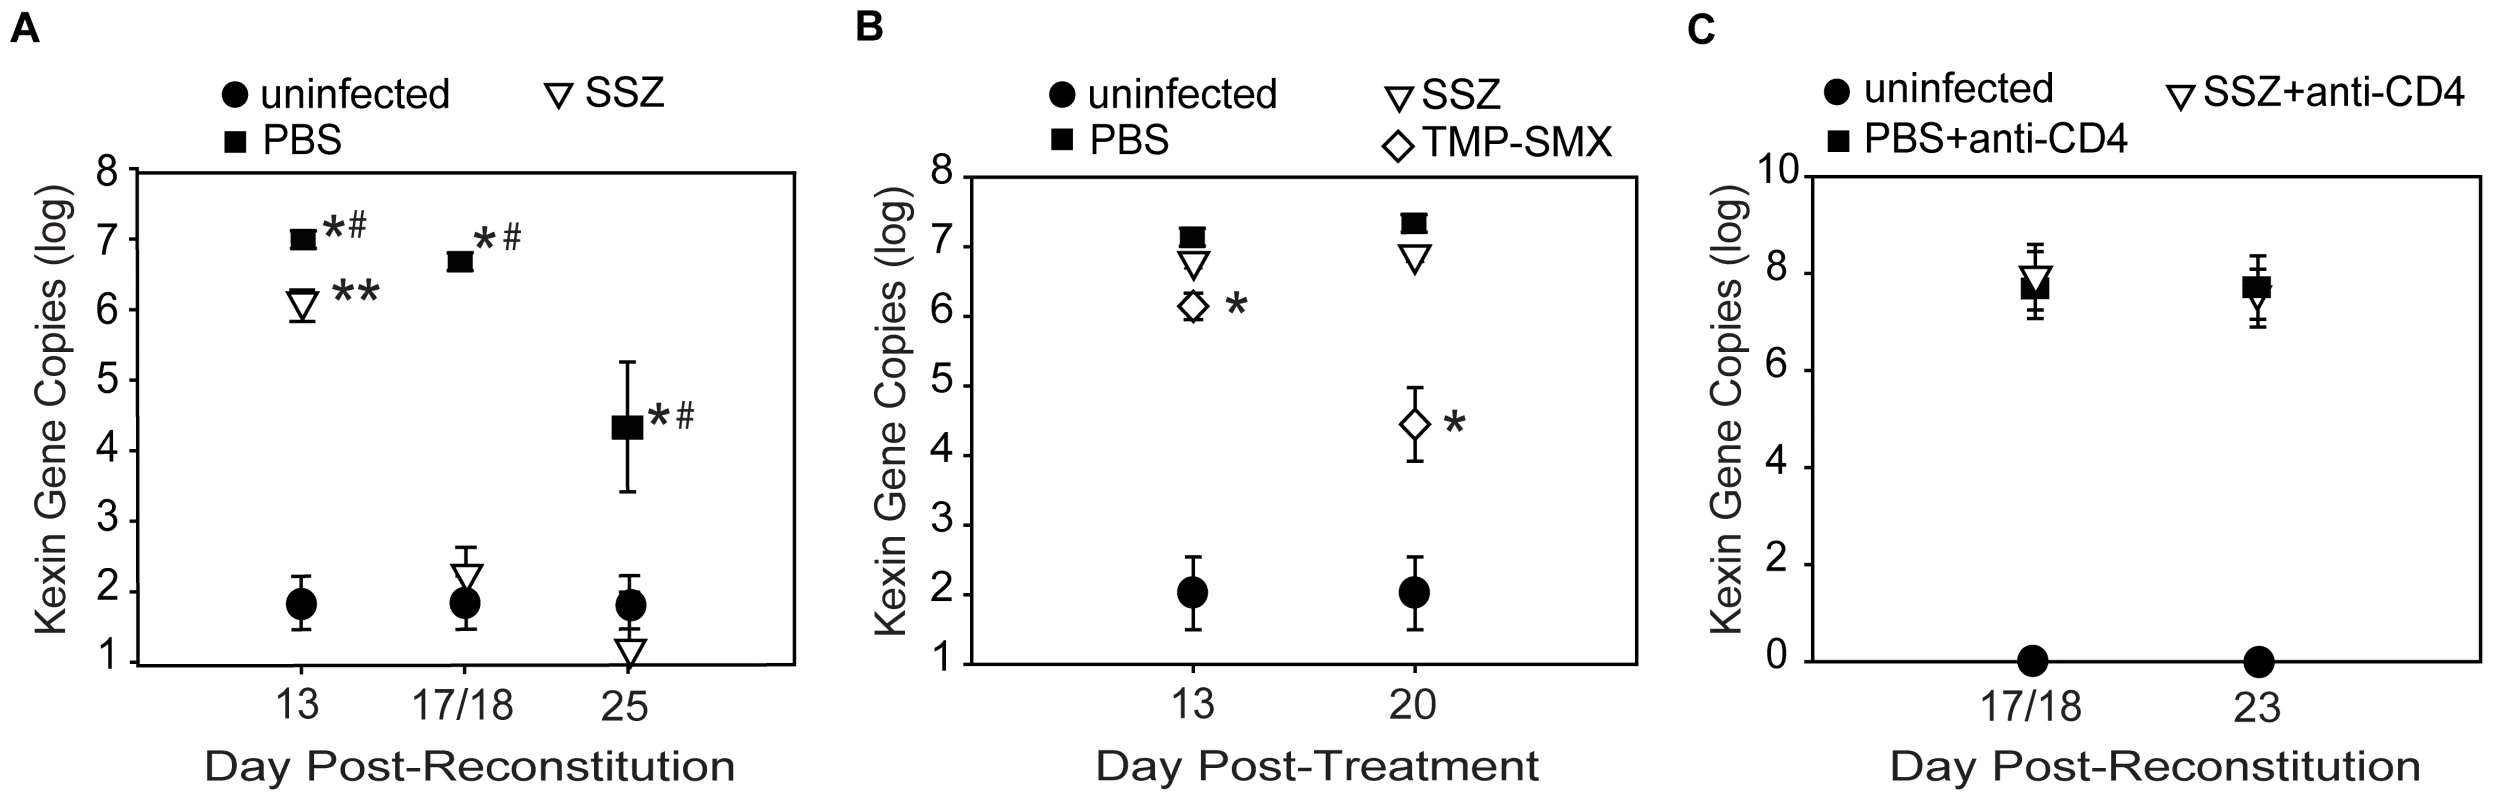 SSZ enhances Pc clearance through a CD4-dependent mechanism.